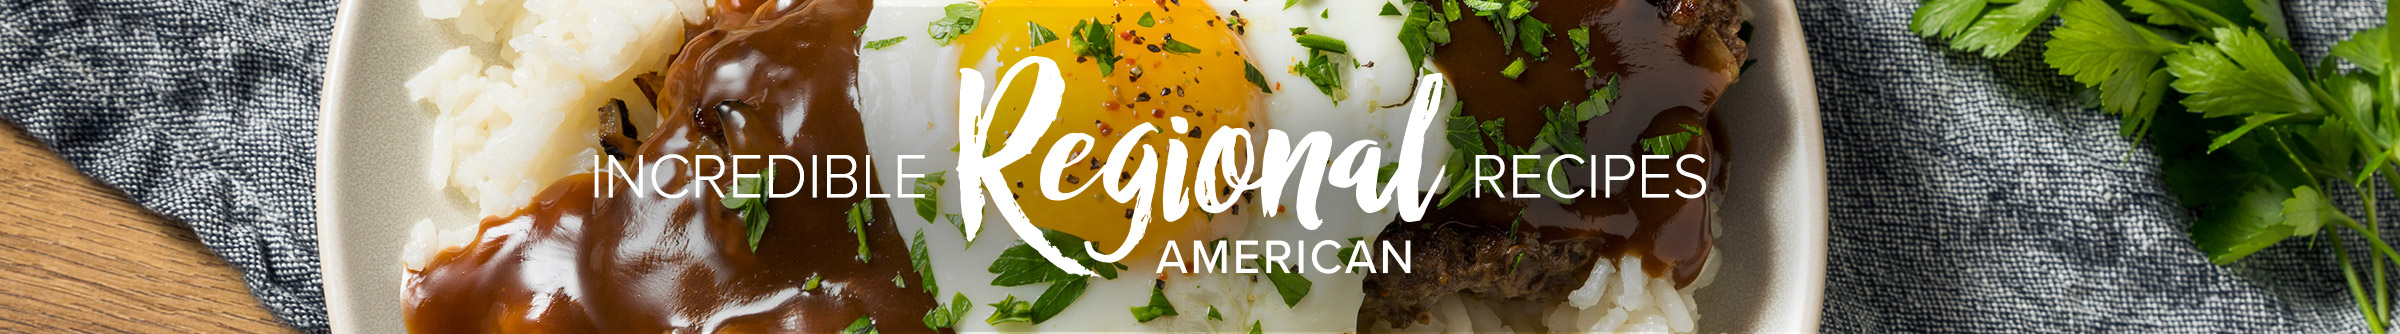 Incredible Regional American recipes